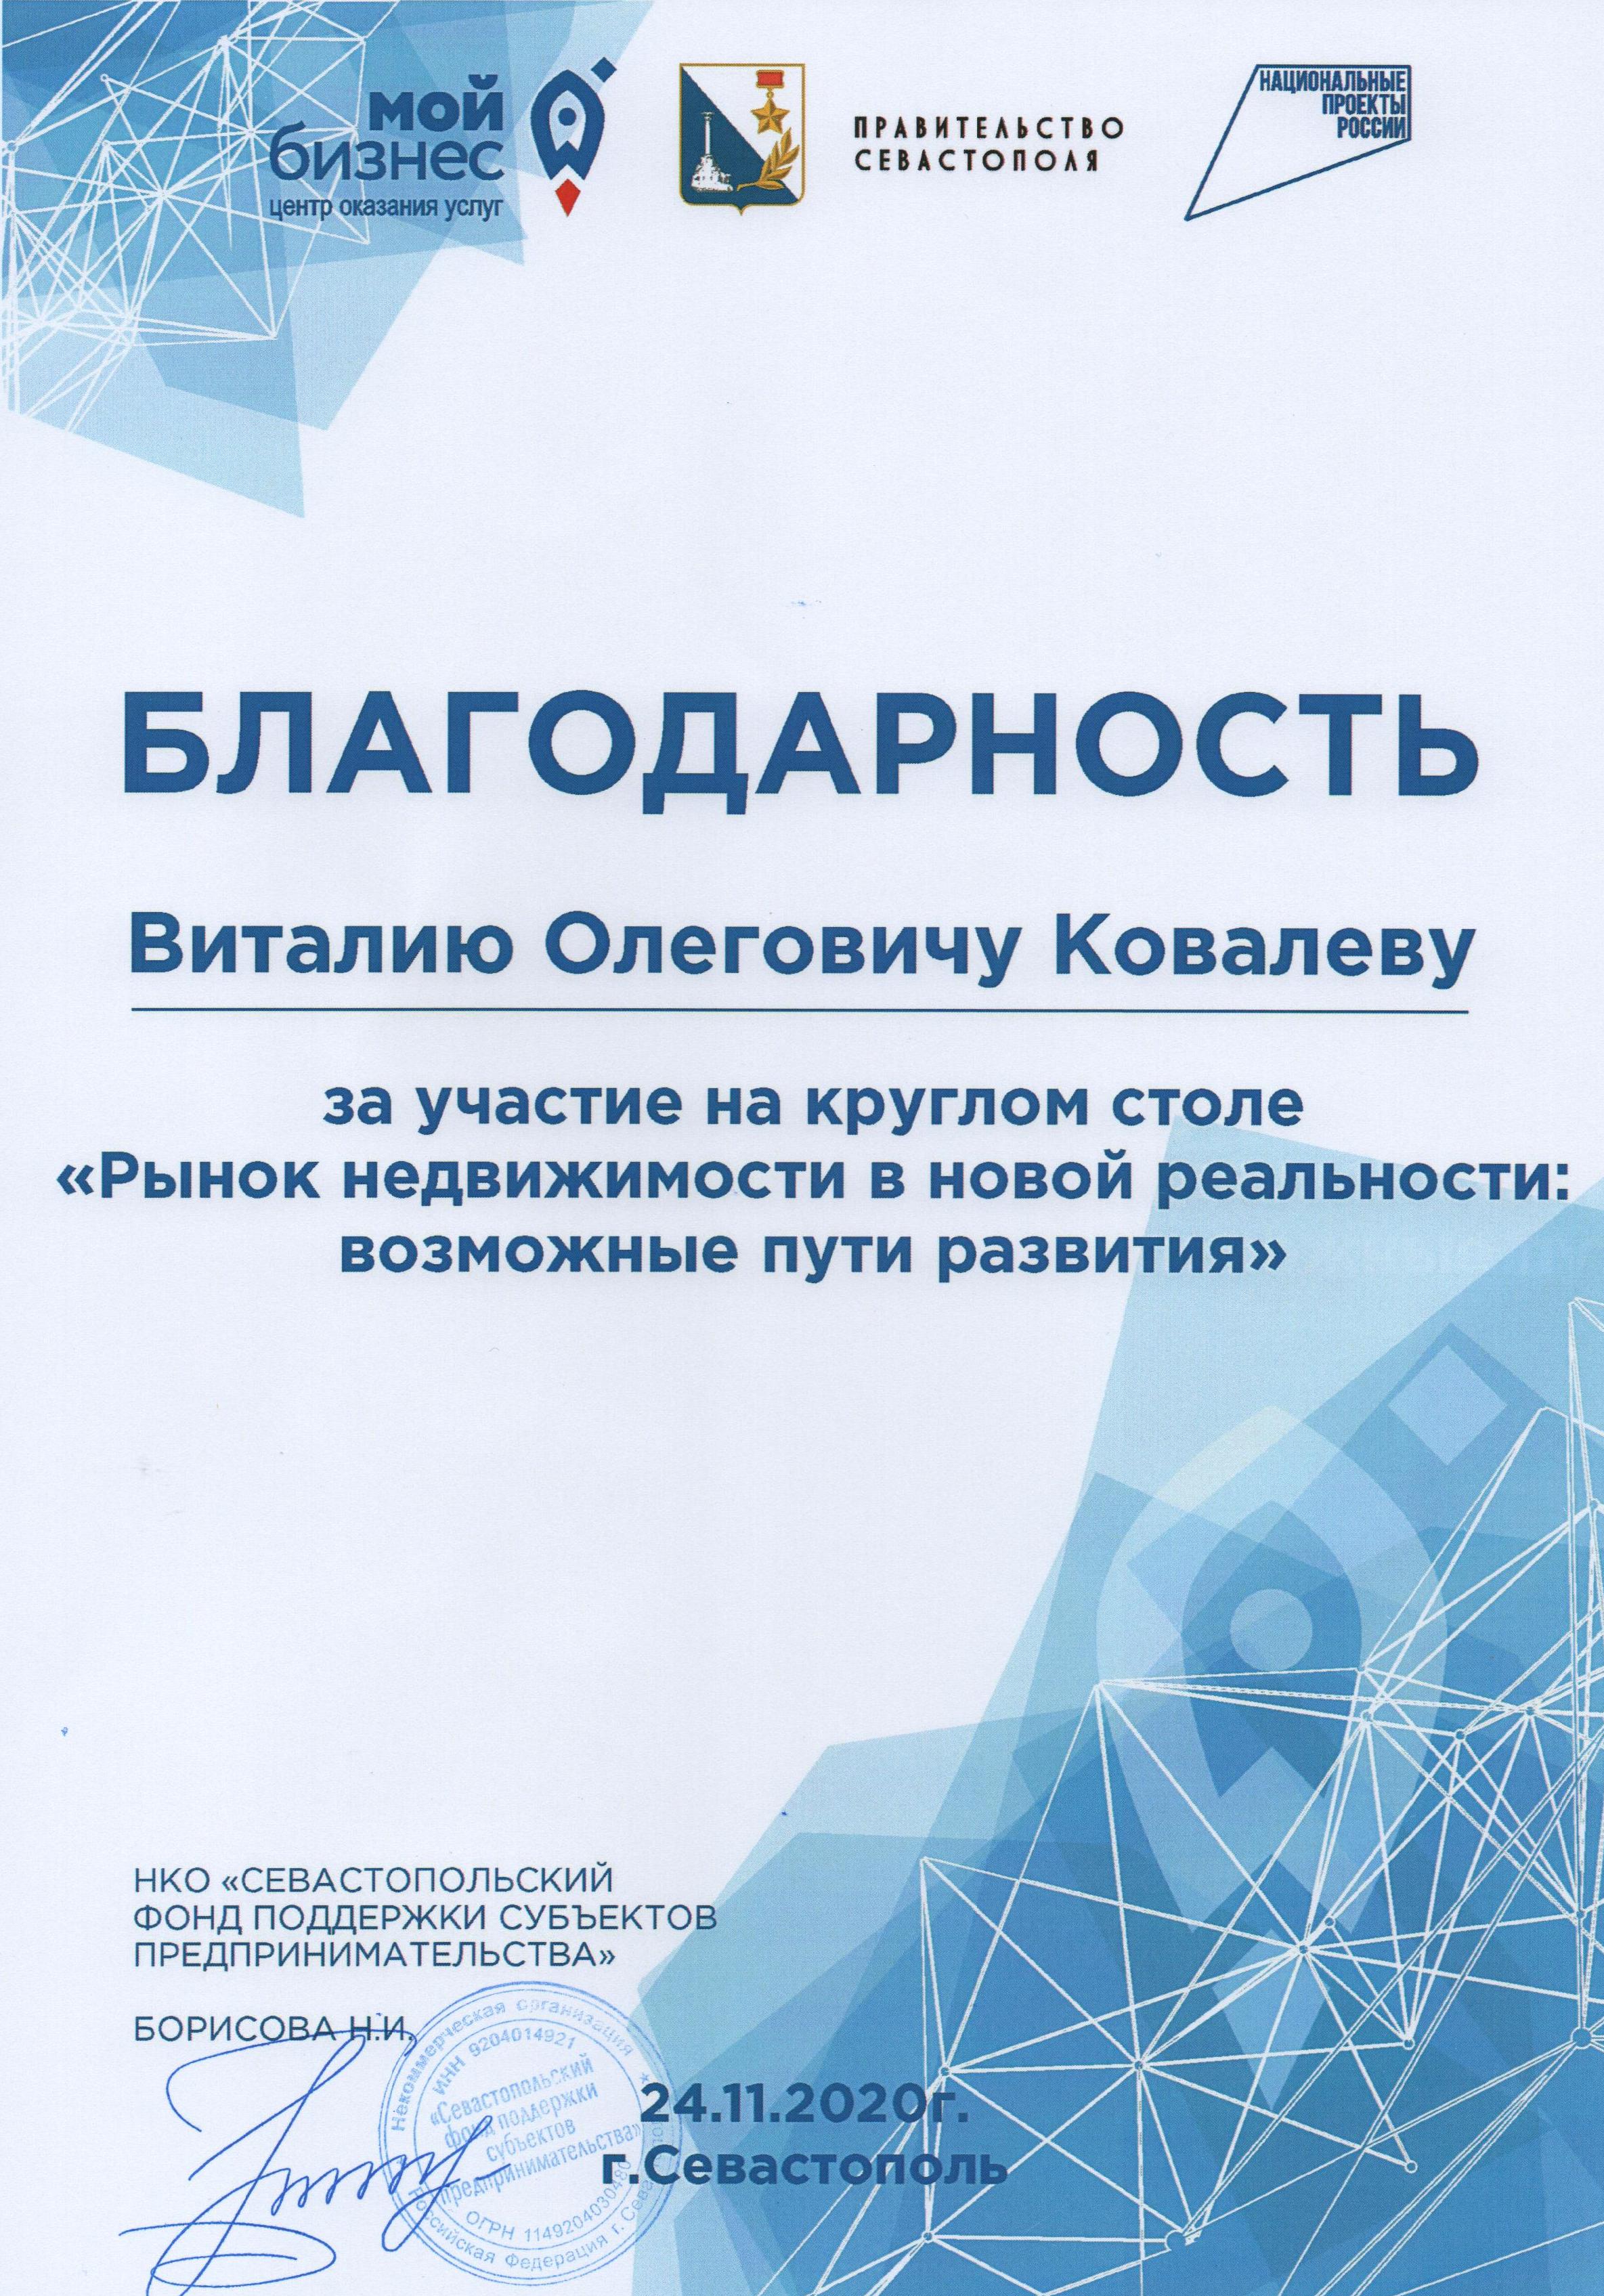 Благодарность Ковалёву В.О. от НКО "Севастопольский фонд поддержки субъектов предпринимательства" 2020